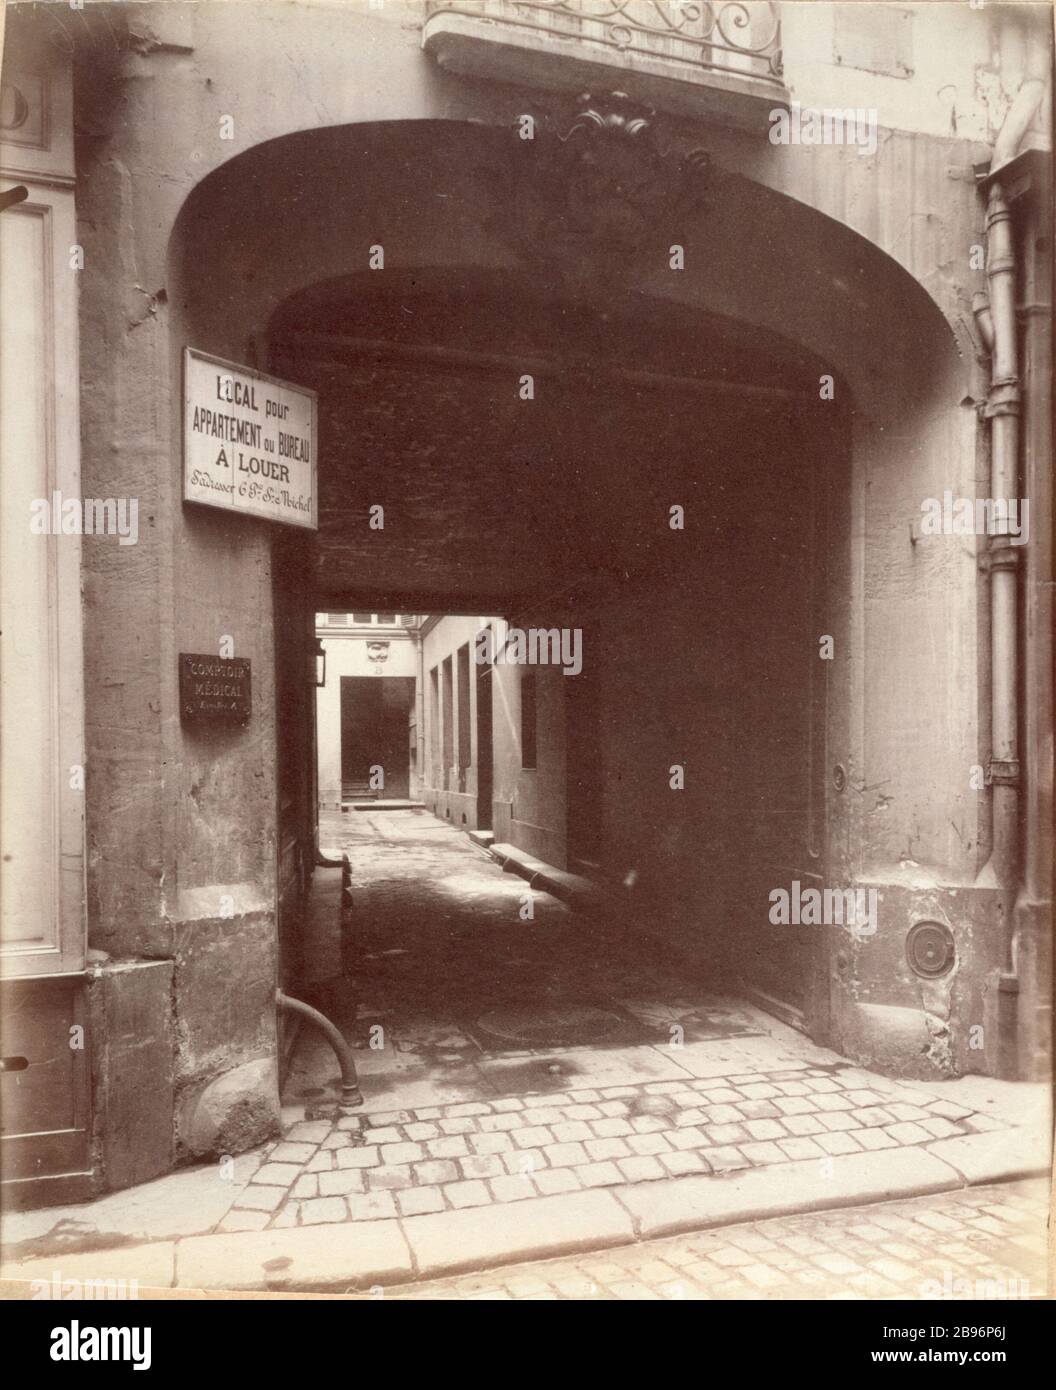 HOTEL SALAMANDER Hôtel de la Salamandre, construit pour la duchesse d'Estampes, 20 rue de l'Hirondelle. Paris (VIème-Bezirk). Photographie d'Eugène Atget (1857-1927). Paris, musée Carnavalet. Stockfoto